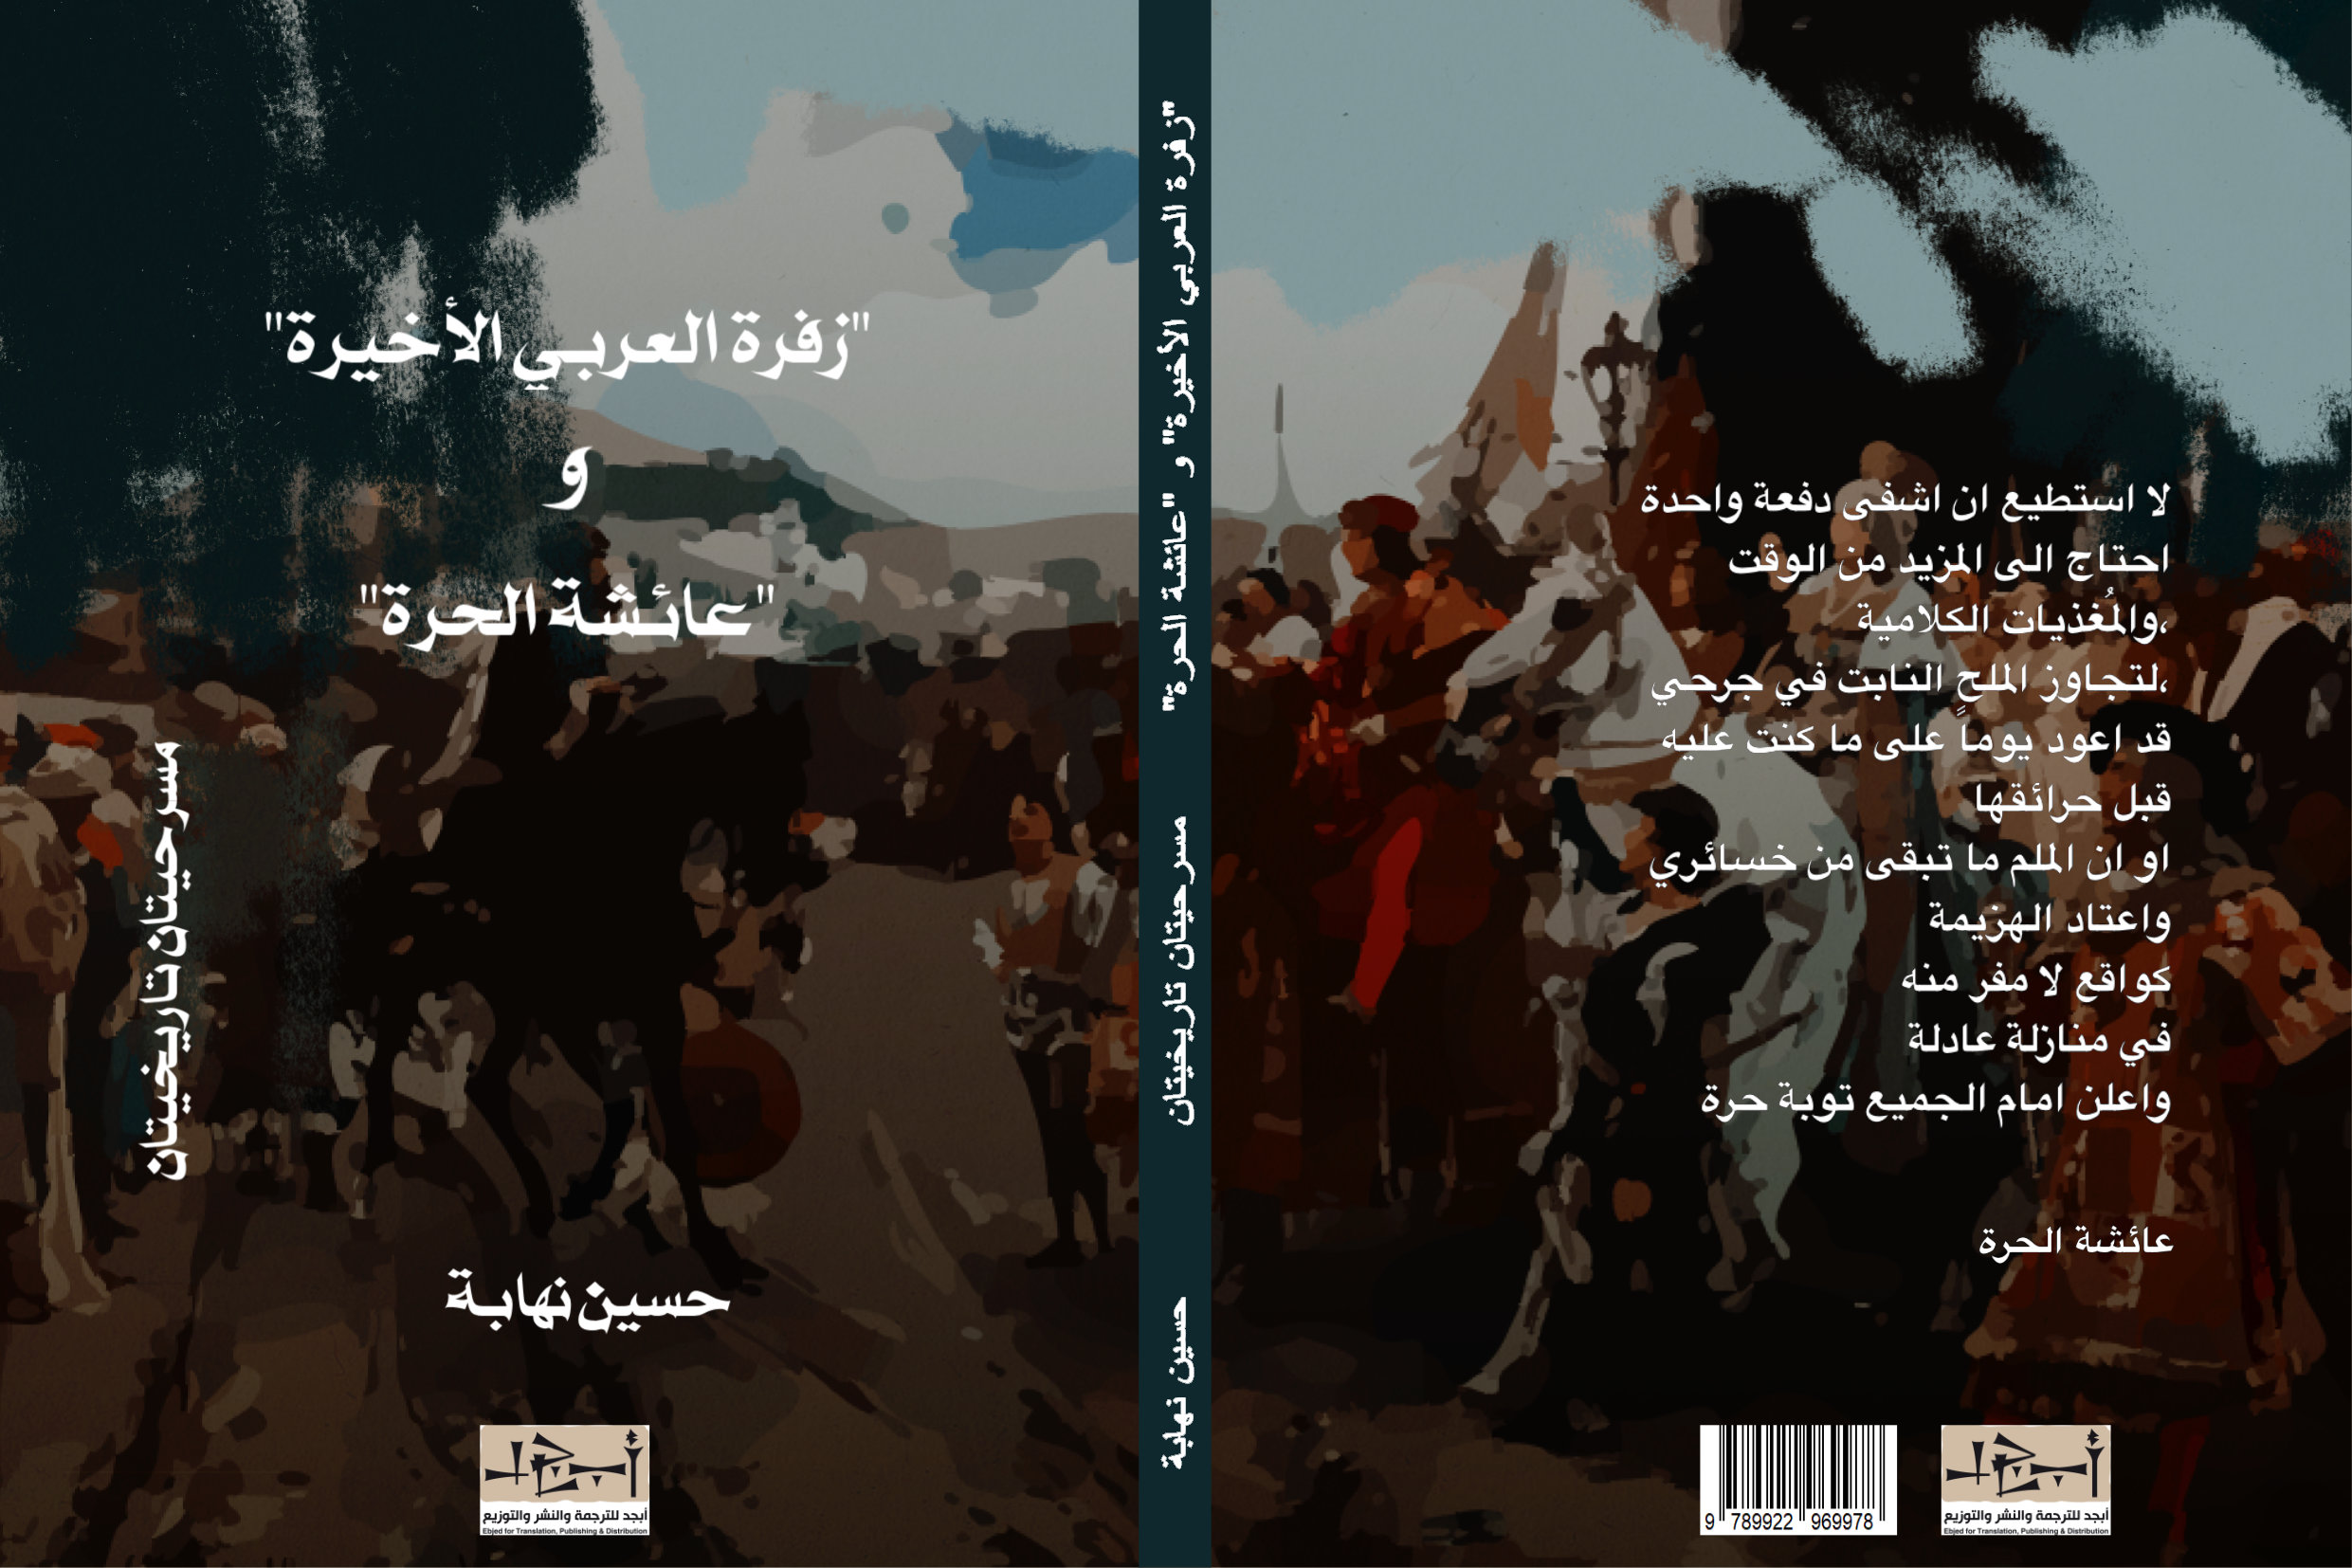 زفرة العربي الأخيرة + عائشة الحرة - مسرحيتان - تأليف حسين نهابة